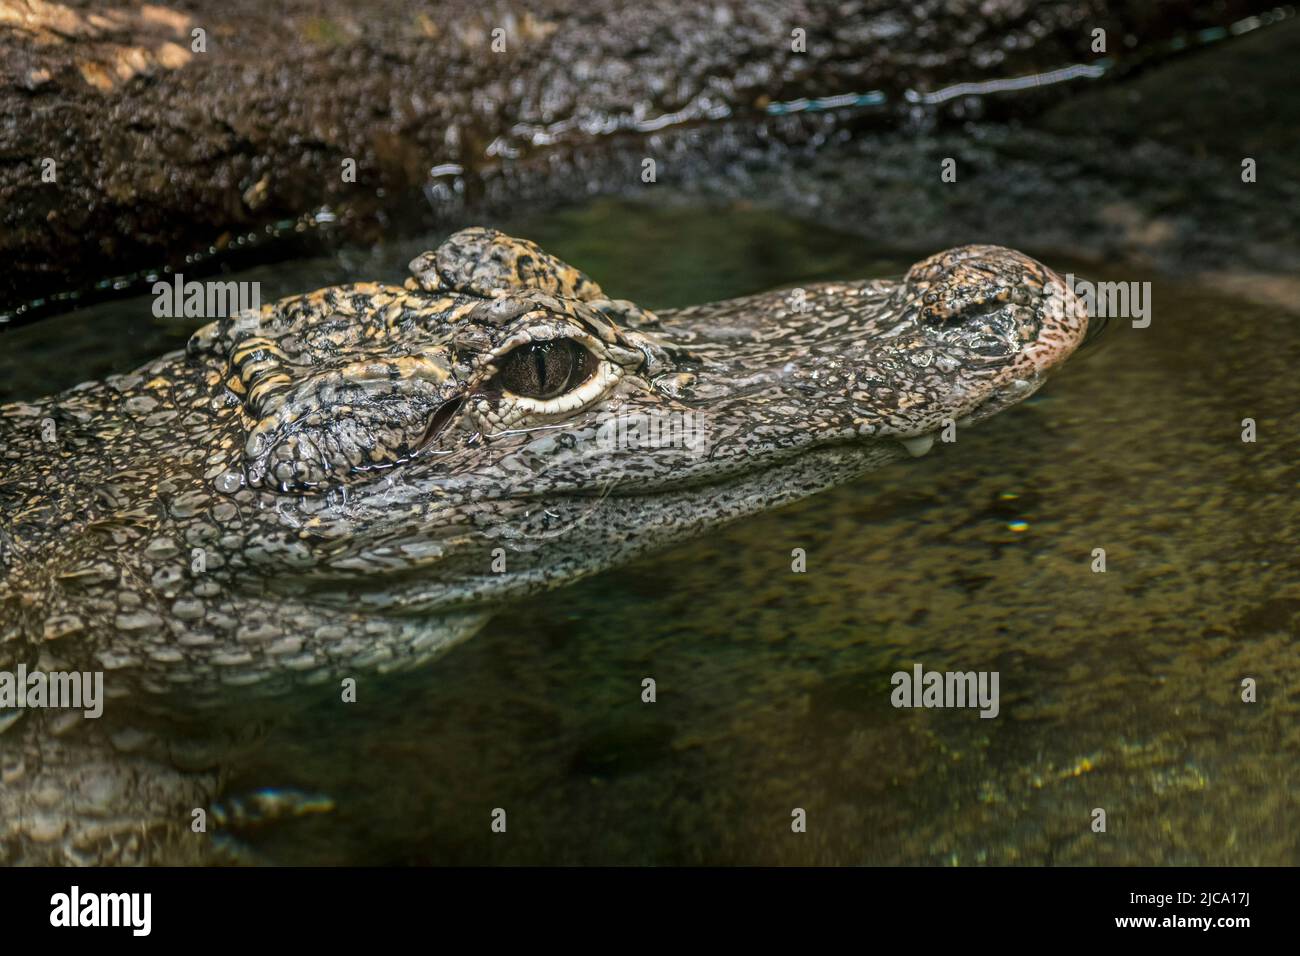 Chinesischer Alligator / Yangtze-Alligator / China-Alligator (Alligator sinensis / Caigator sinensis), der in einem Teich ruht, Krokodil, der in China endemisch ist Stockfoto